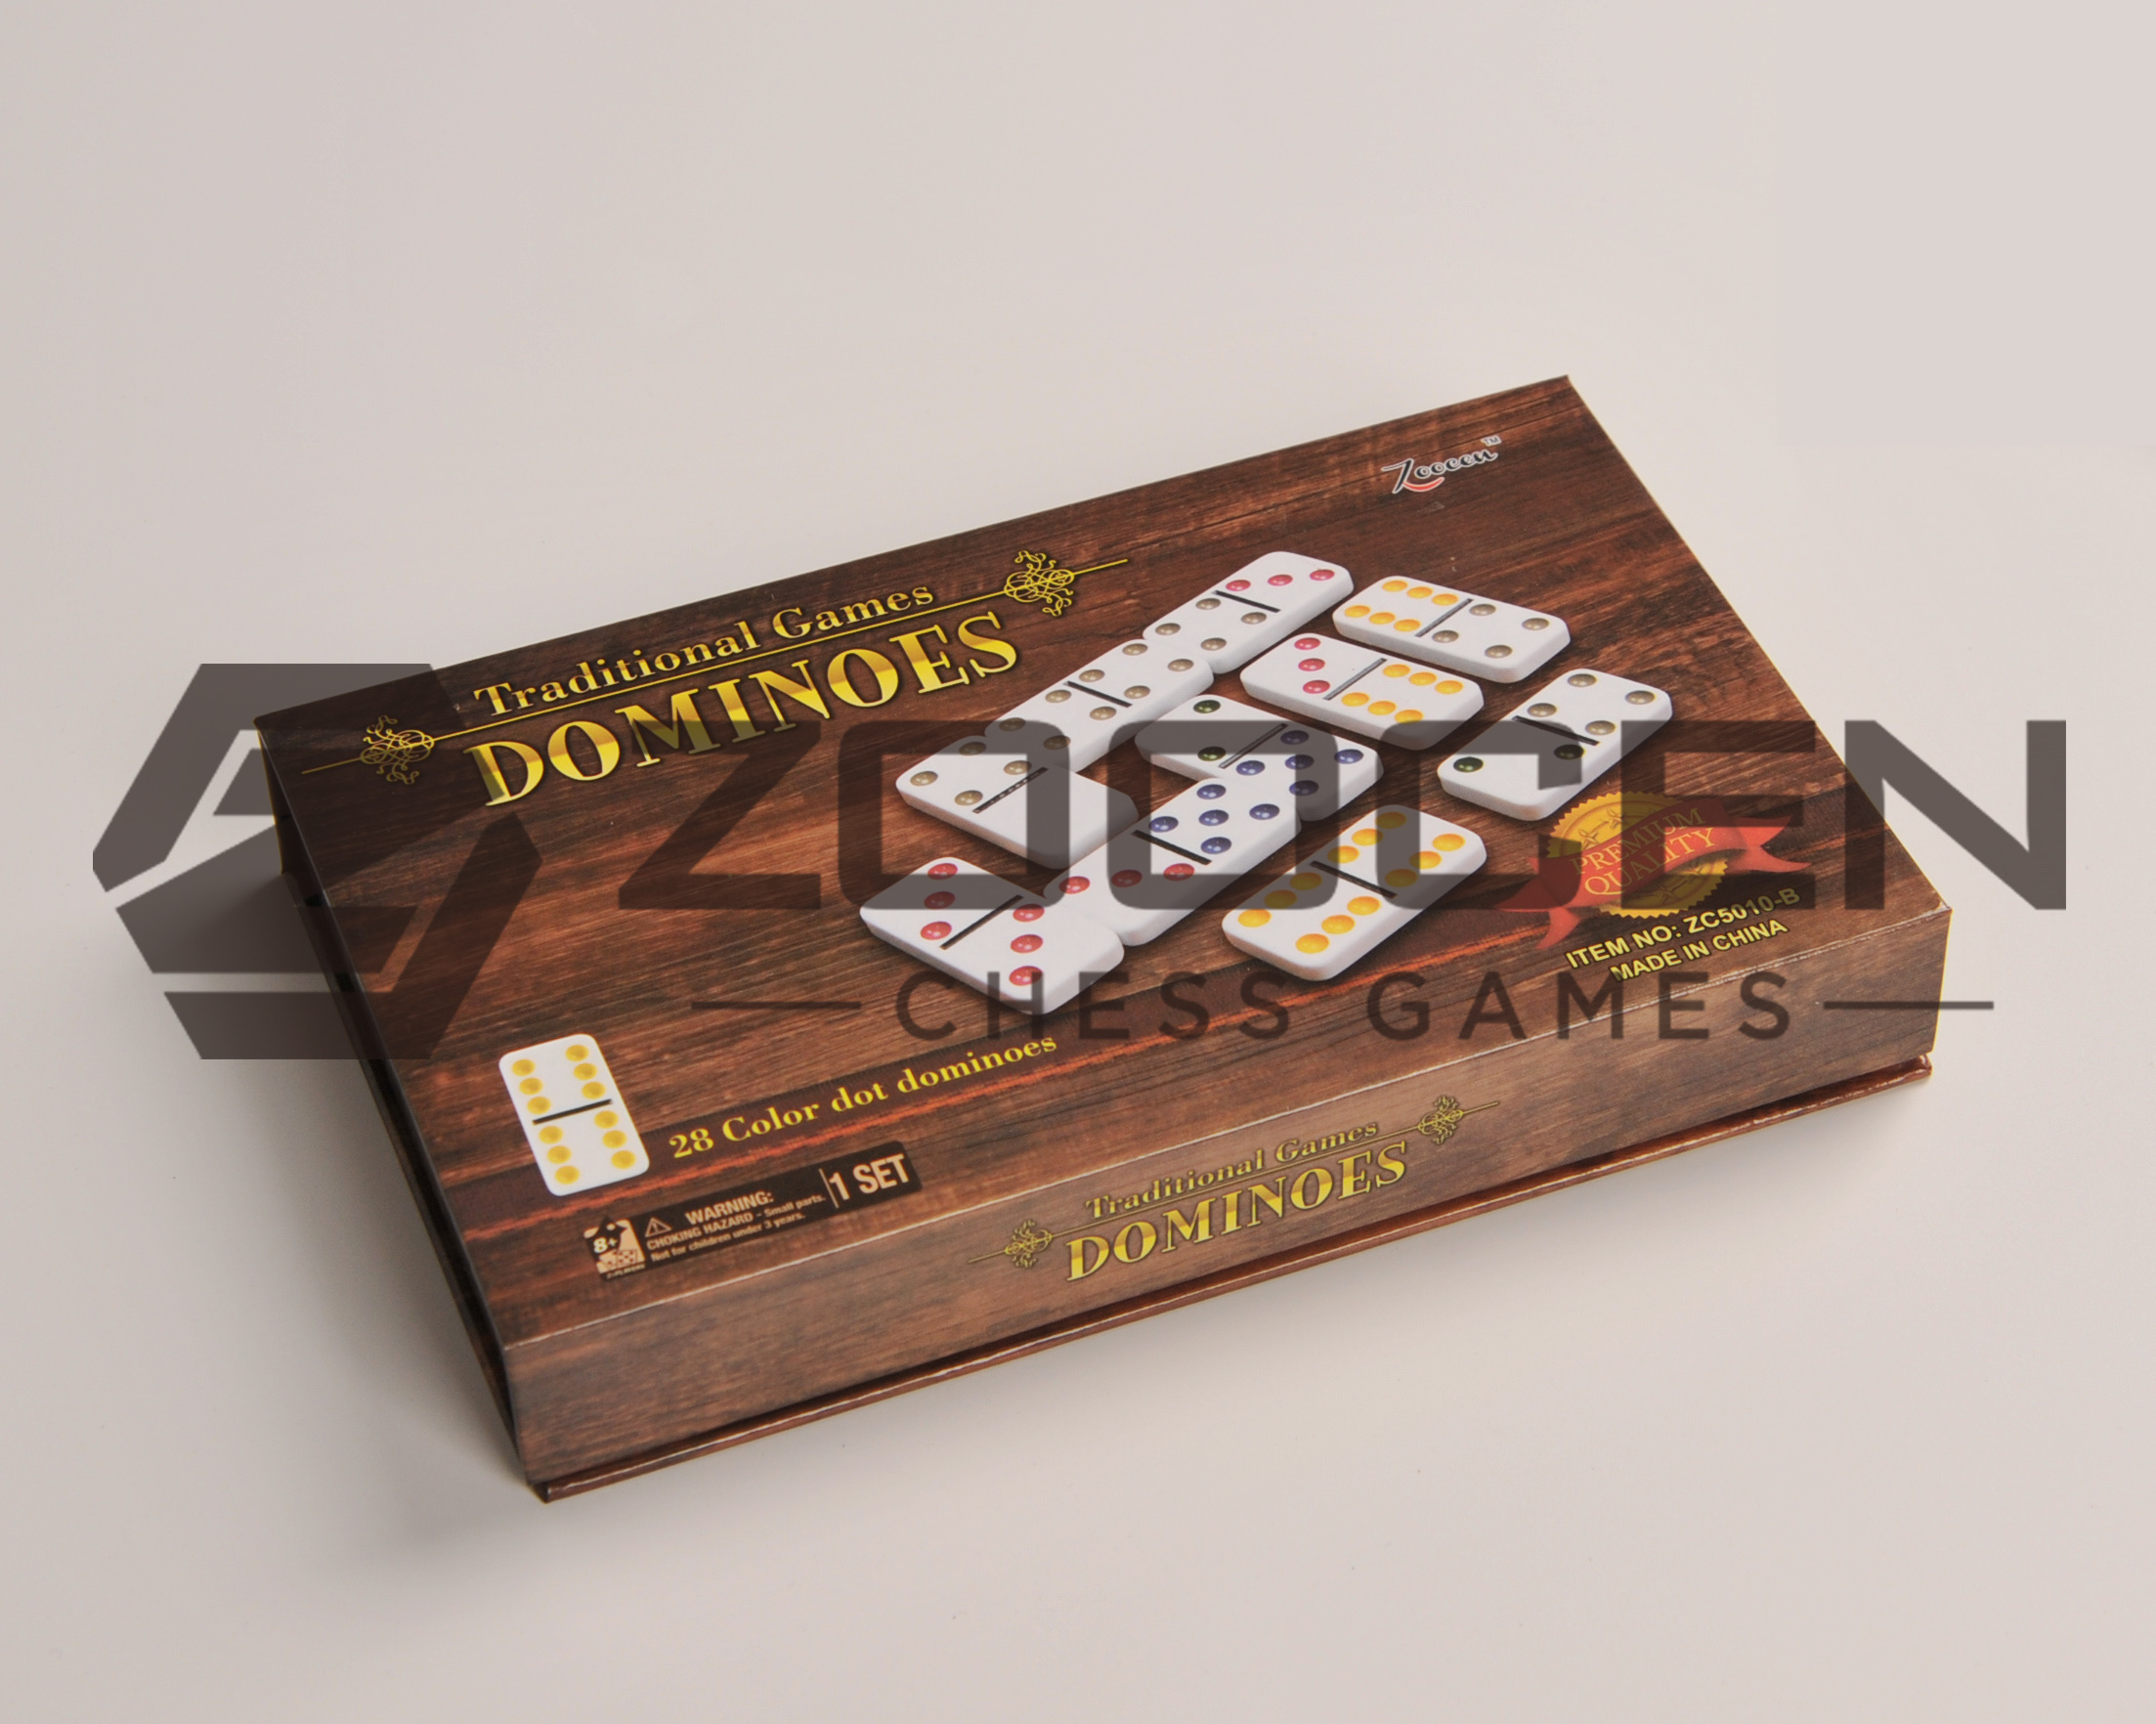 硬纸盒包装双六白彩多米诺套装 Double 6 Color Dot Dominoes Set详情图3